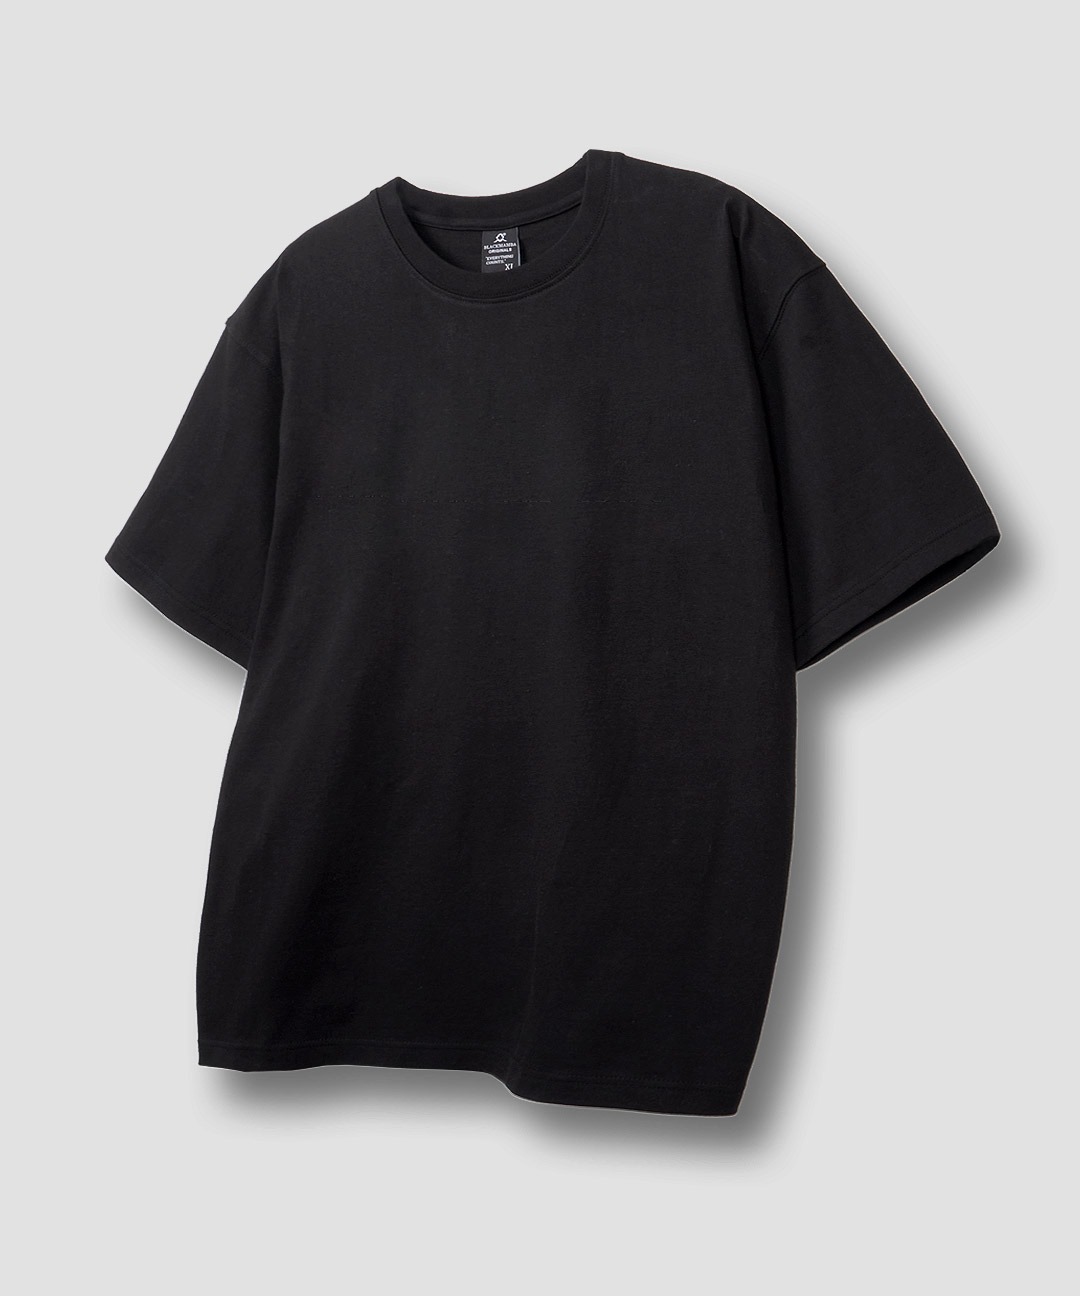 无纹 Standas 短袖 T恤 (黑色)